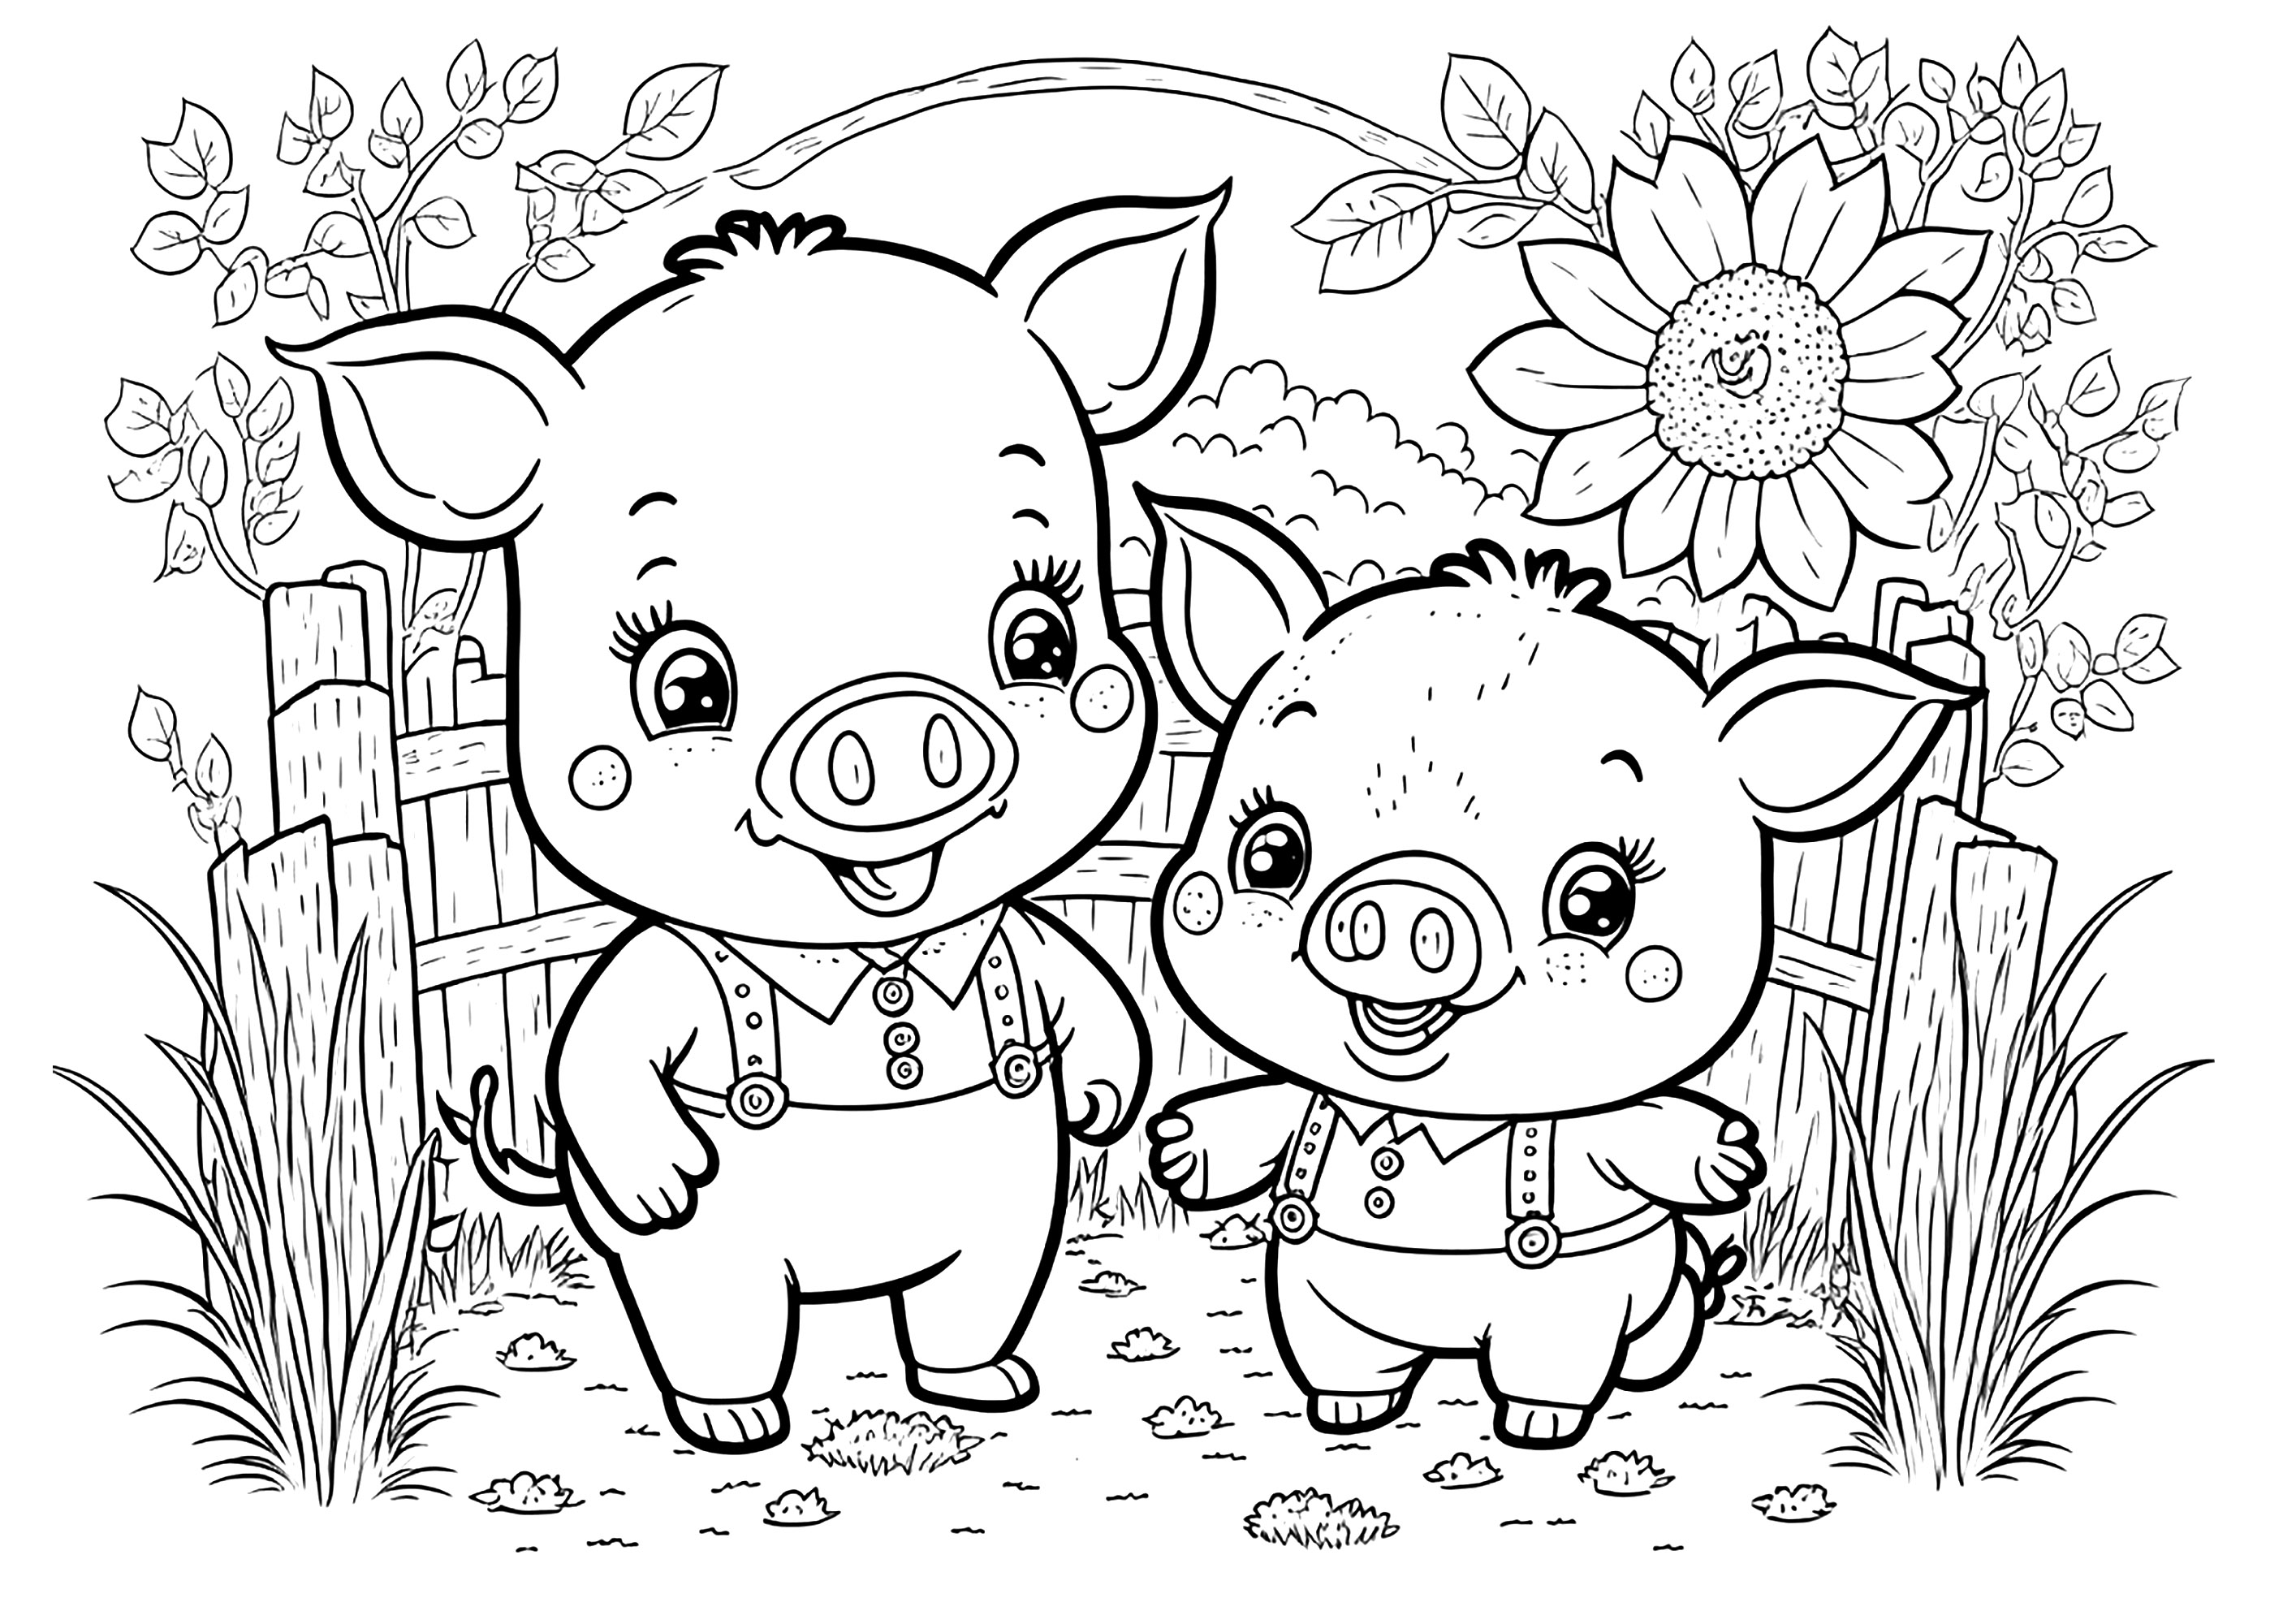 Dibujos para colorear de Cerdos para descargar - Cerdos - Just Color Niños  : Dibujos para colorear para niños